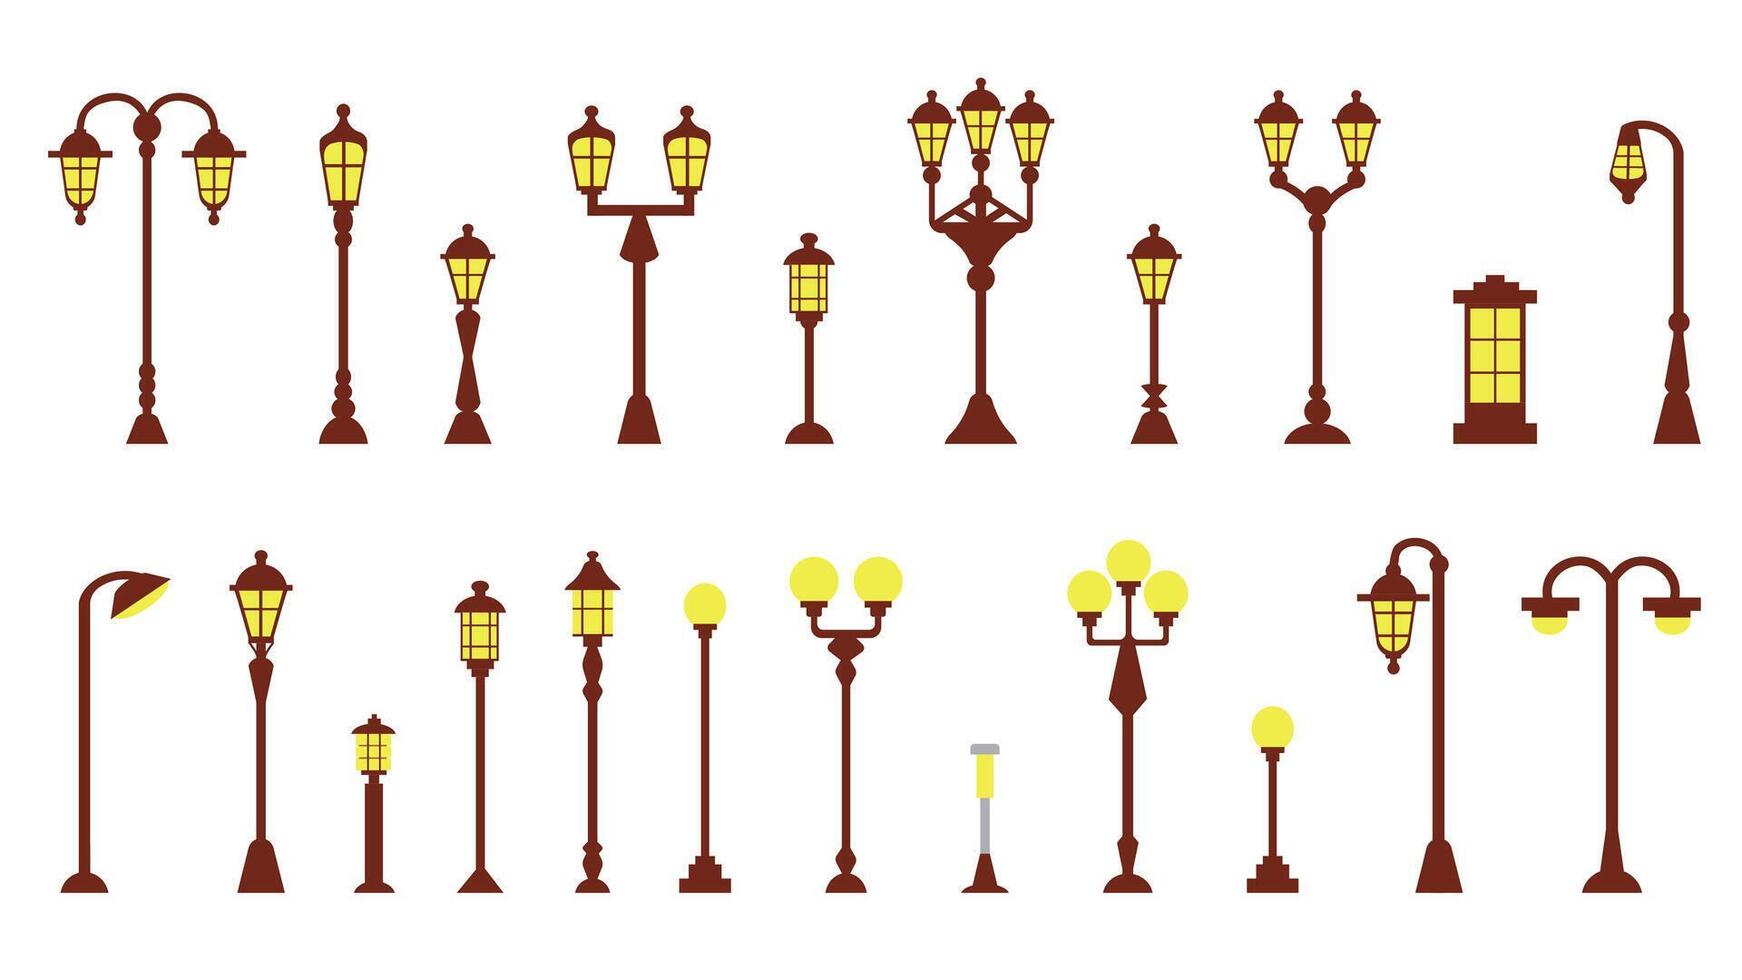 reeks van pictogrammen van modern en wijnoogst lantaarns van elementen van stedelijk infrastructuur en stad parken, illustraties in een vlak stijl. vector